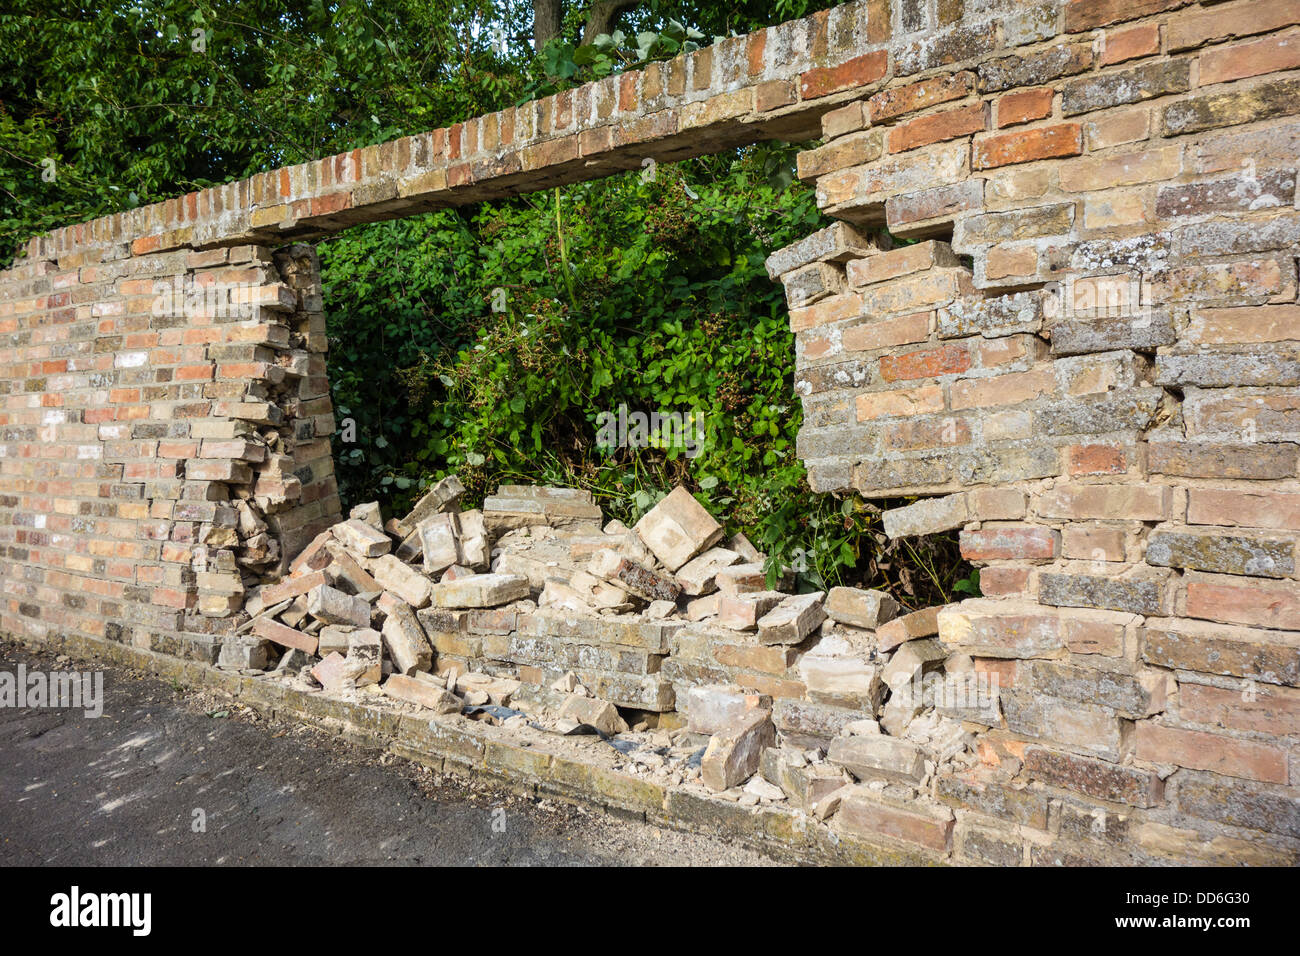 Loch in der Mauer verursachten Autounfall, Landbeach, Cambridgeshire Stockfoto